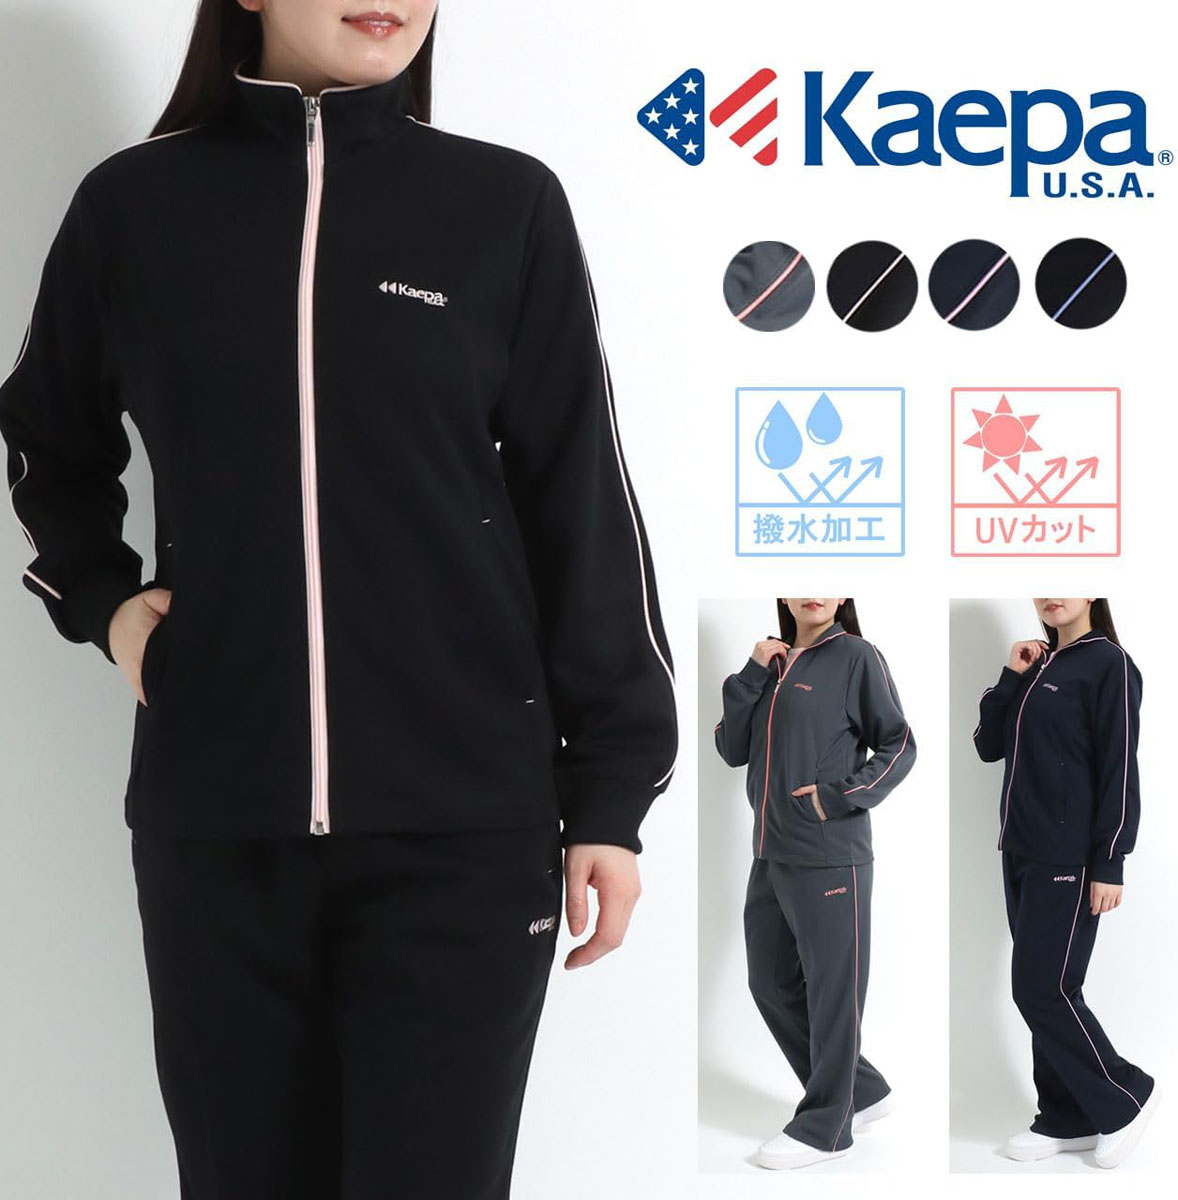 kaepa 速乾ランニングTシャツ 人気定番の - ウォーキング・ランニングウェア